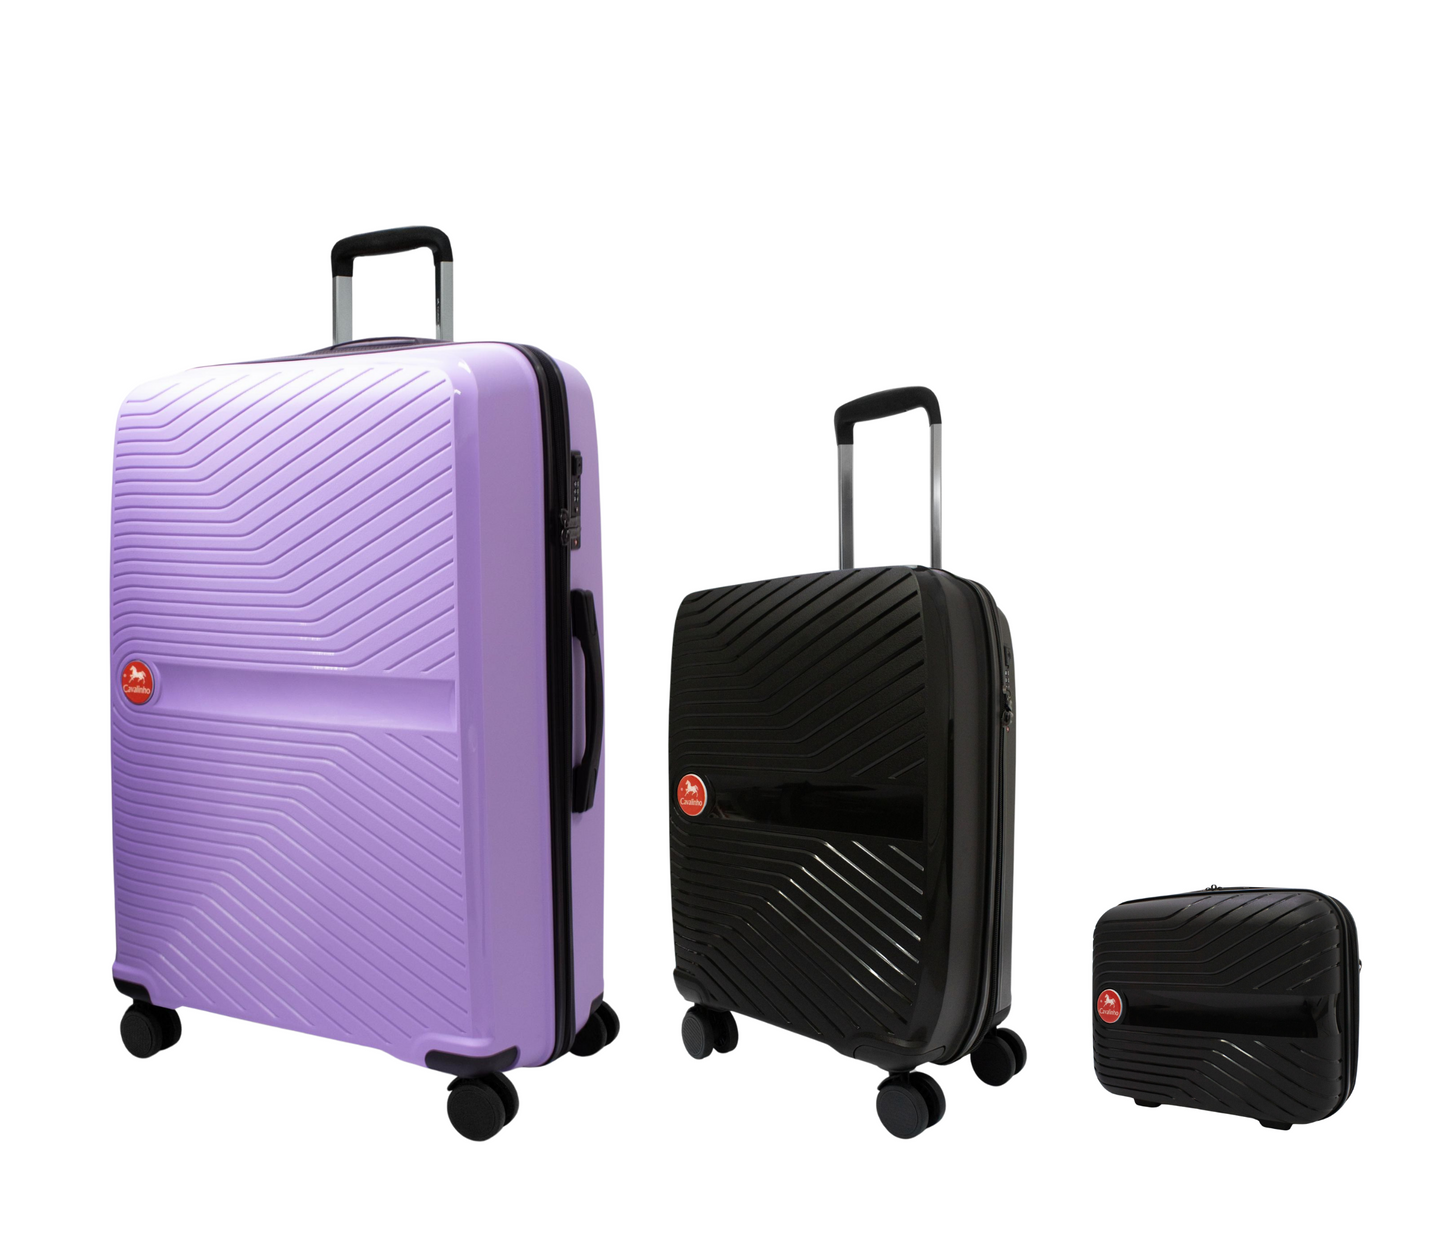 Cavalinho Canada & USA Colorful 3 Piece Luggage Set (15", 19" & 28") - Black Black Lilac - 68020004.010139.S151928._2